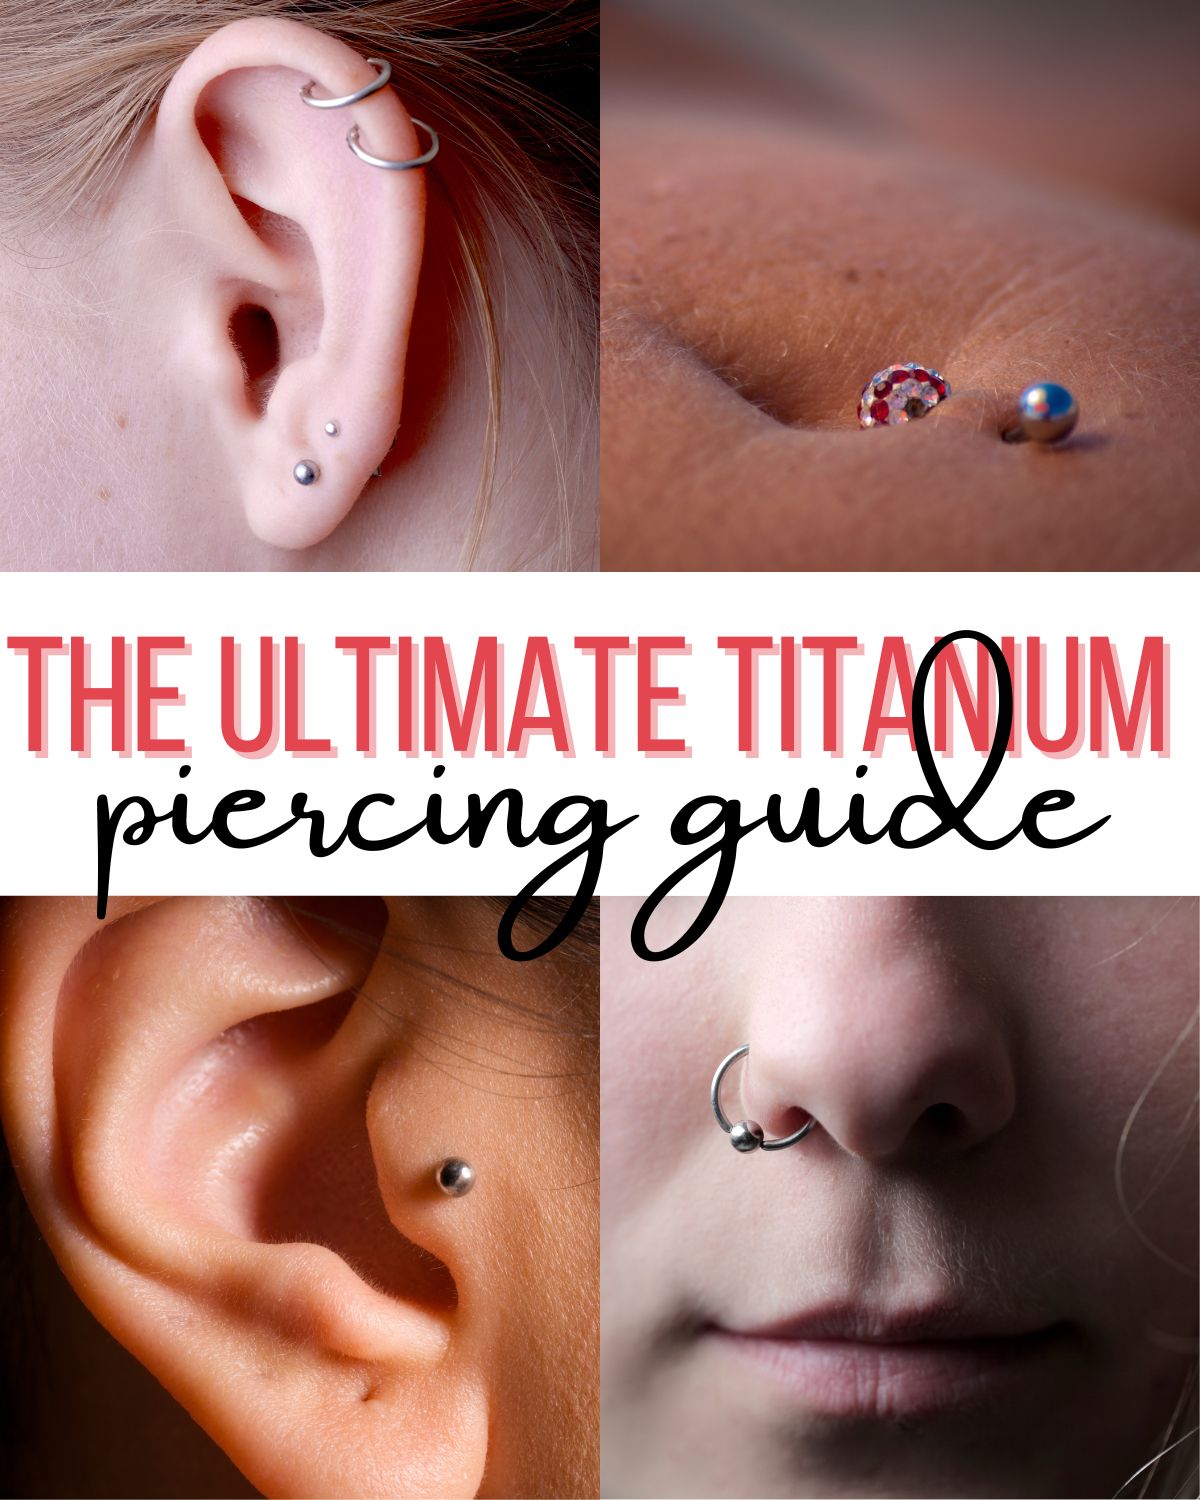 The ultimate titanium piercing guide